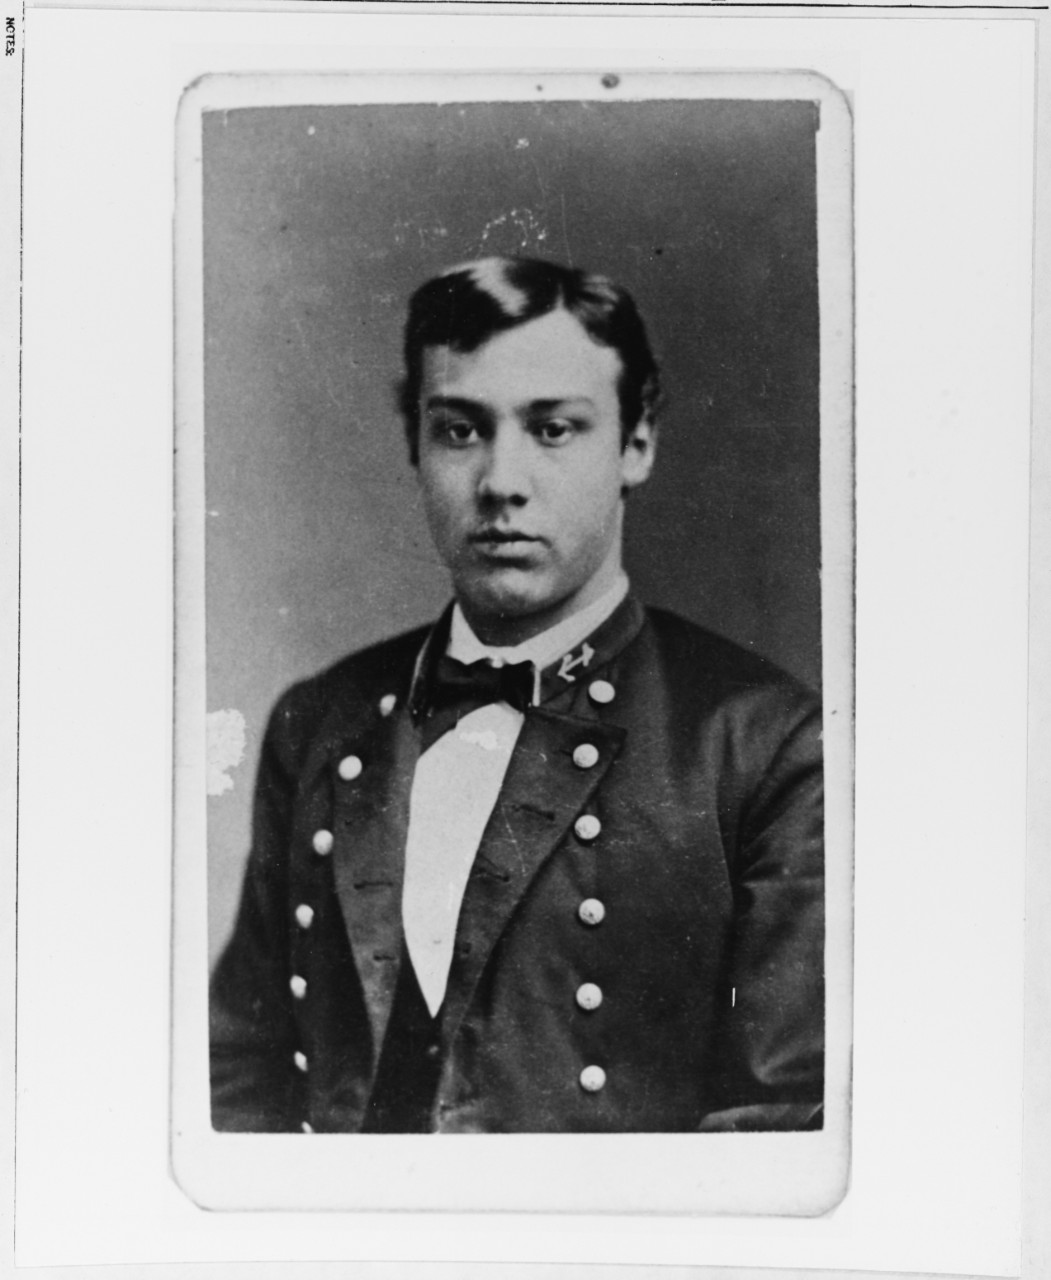 Cadet Midshipman William V. Bronaugh, 1874